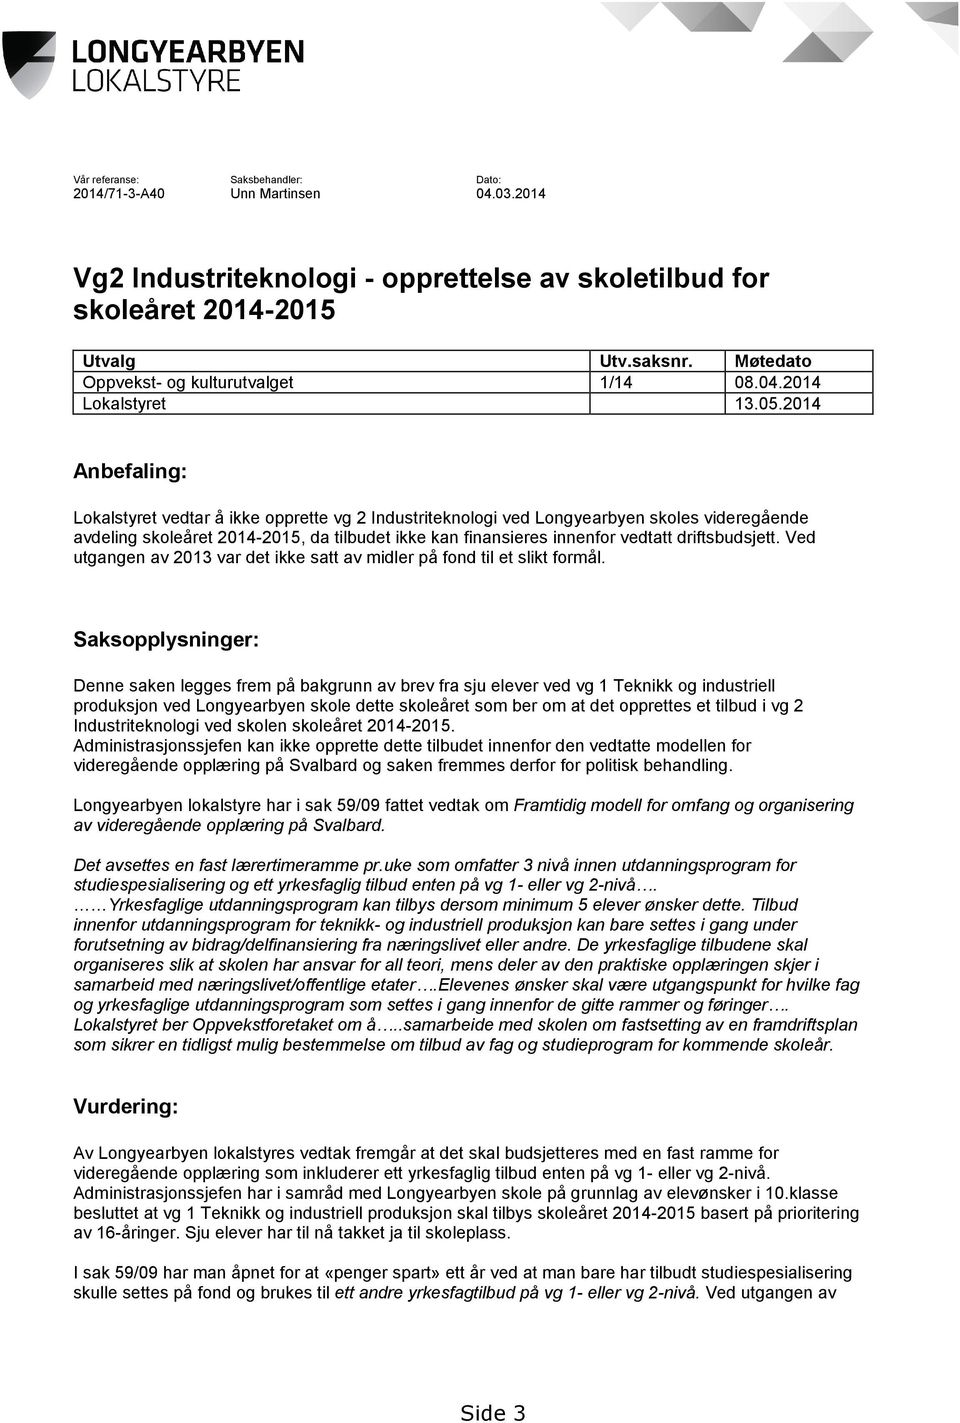 2014 Anbefaling: Lokalstyret vedtar å ikke opprette vg 2 Industriteknologi ved Longyearbyen skoles videregående avdeling skoleåret 2014-2015, da tilbudet ikke kan finansieres innenfor vedtatt